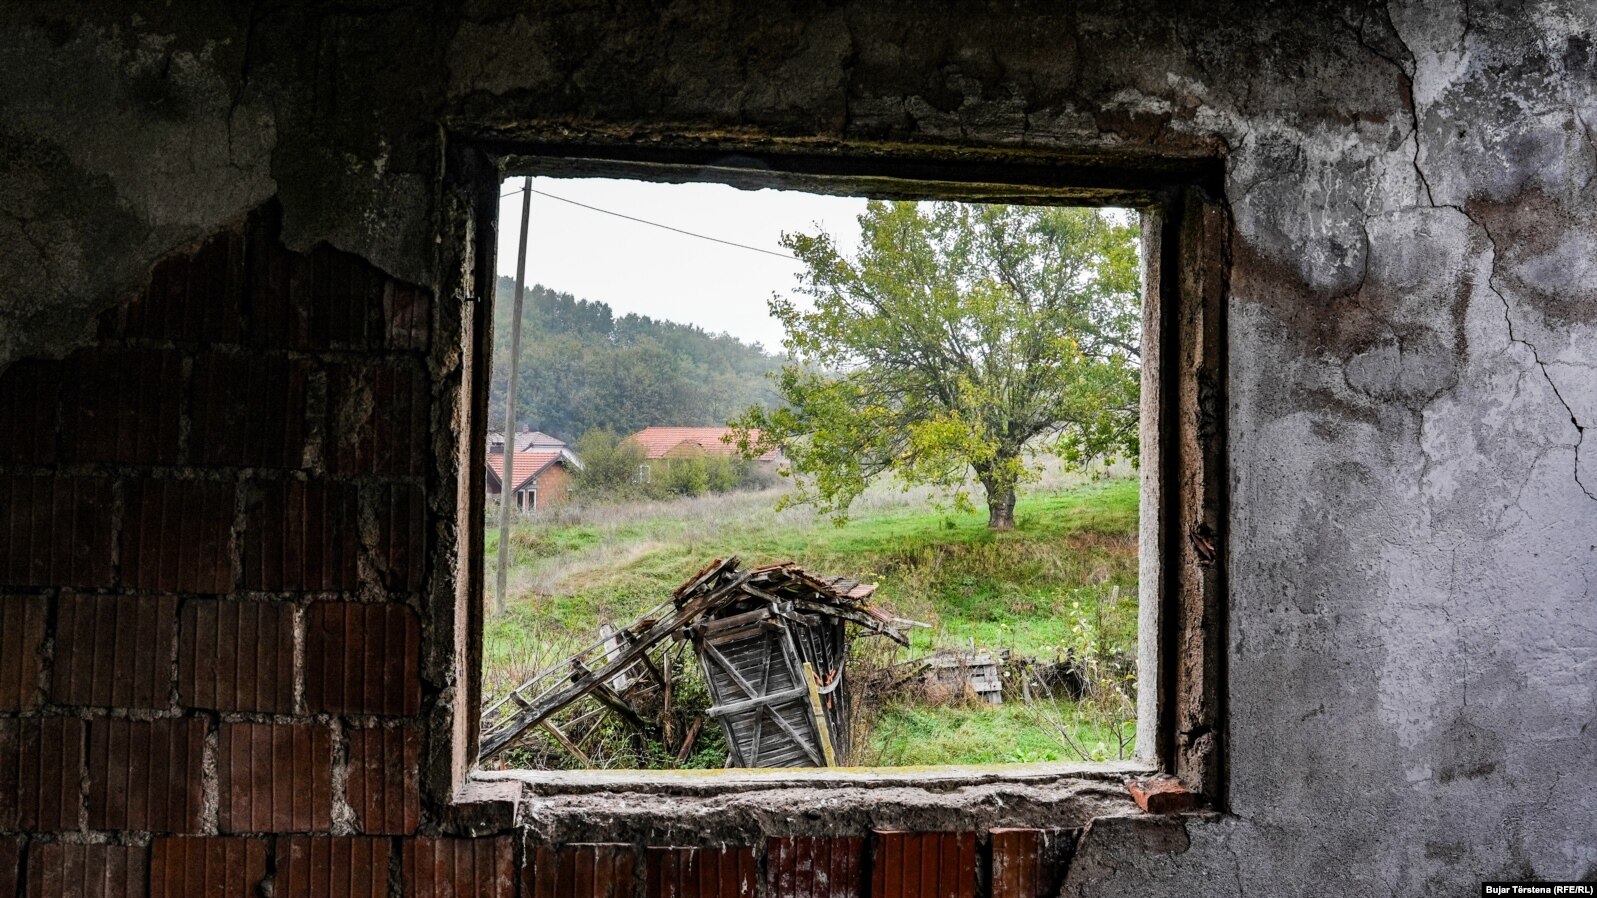 Lëndina ku u vranë civilët shqiptarë të fshatit Landovicë shihet nga dritarja e shtëpisë së dëmtuar gjatë sulmit të forcave serbe në luftën e vitit 1999.